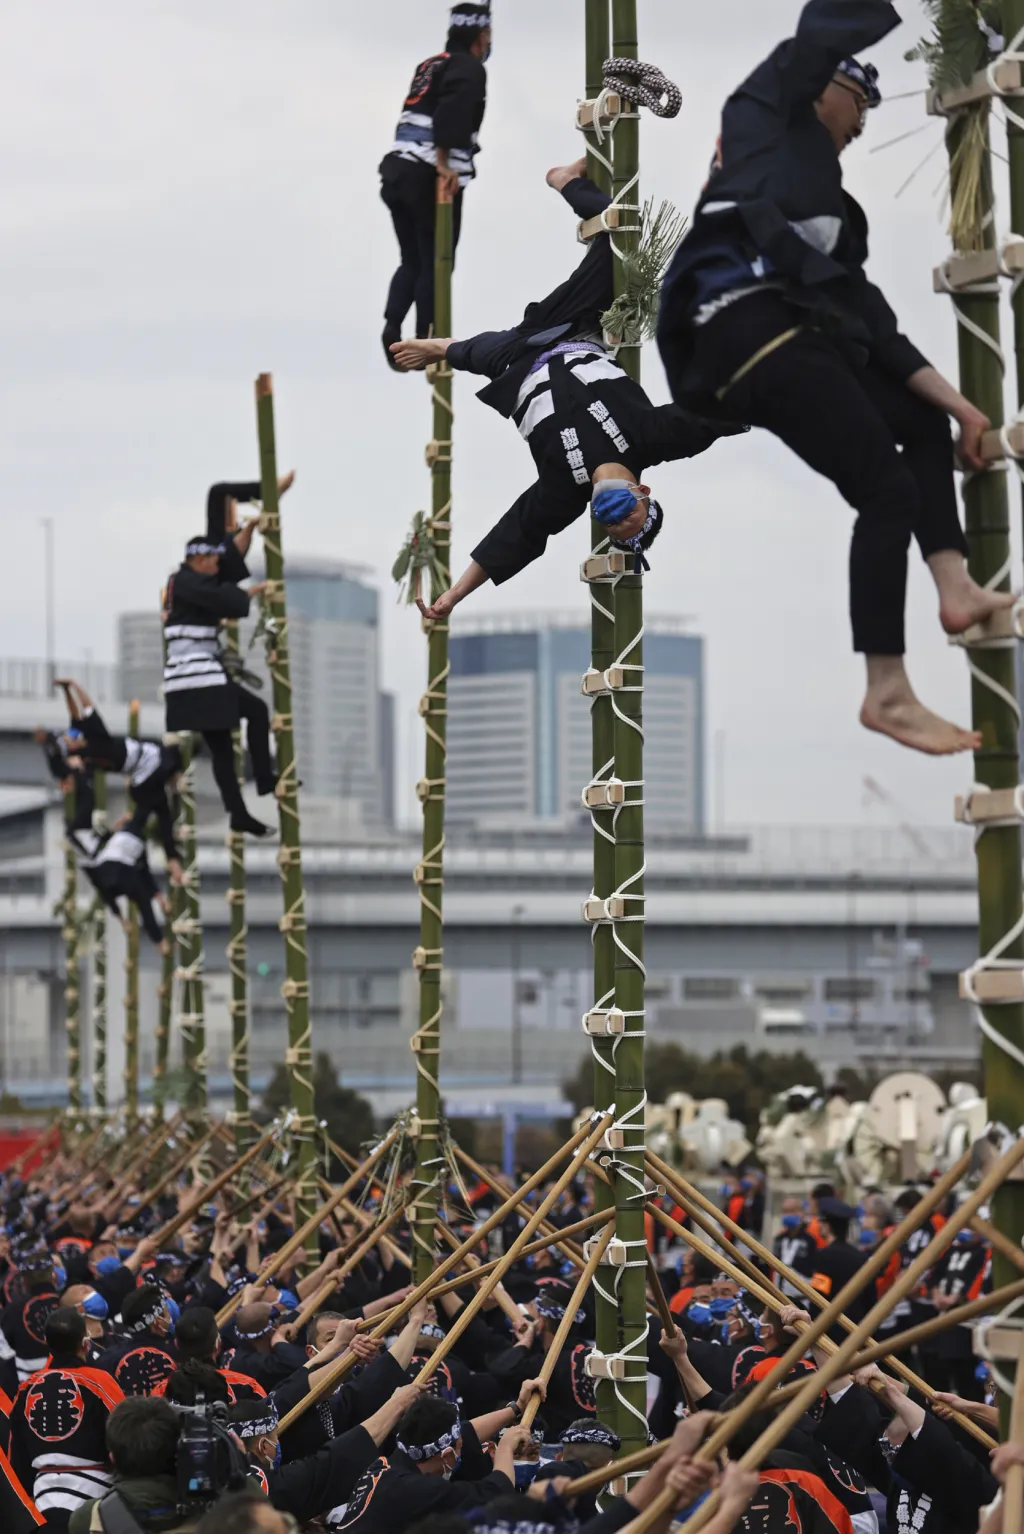 Speciální jednotka japonských hasičů předvedla své akrobatické umění během přehlídky v Tokiu